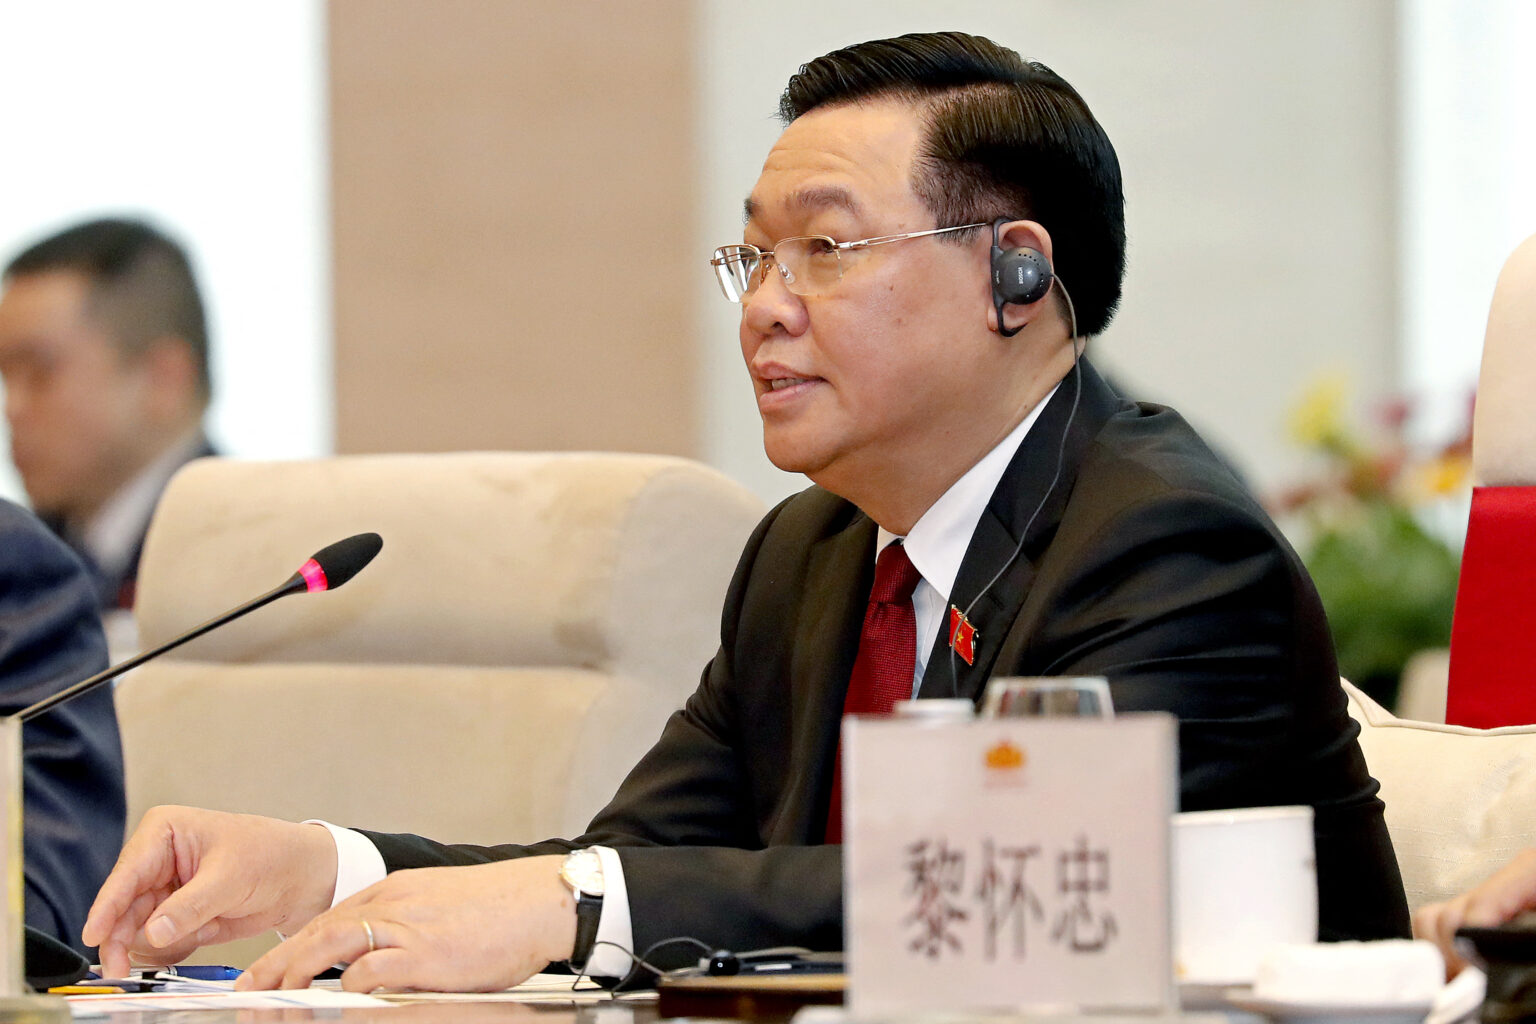 Ông Vương Đình Huệ tại buổi đón tiếp Chủ tịch Trung Quốc Tập Cận Bình khi ông này đến Hà Nội hôm 12/12/2023. Ảnh: Minh Hoang/POOL /AFP via Getty Images